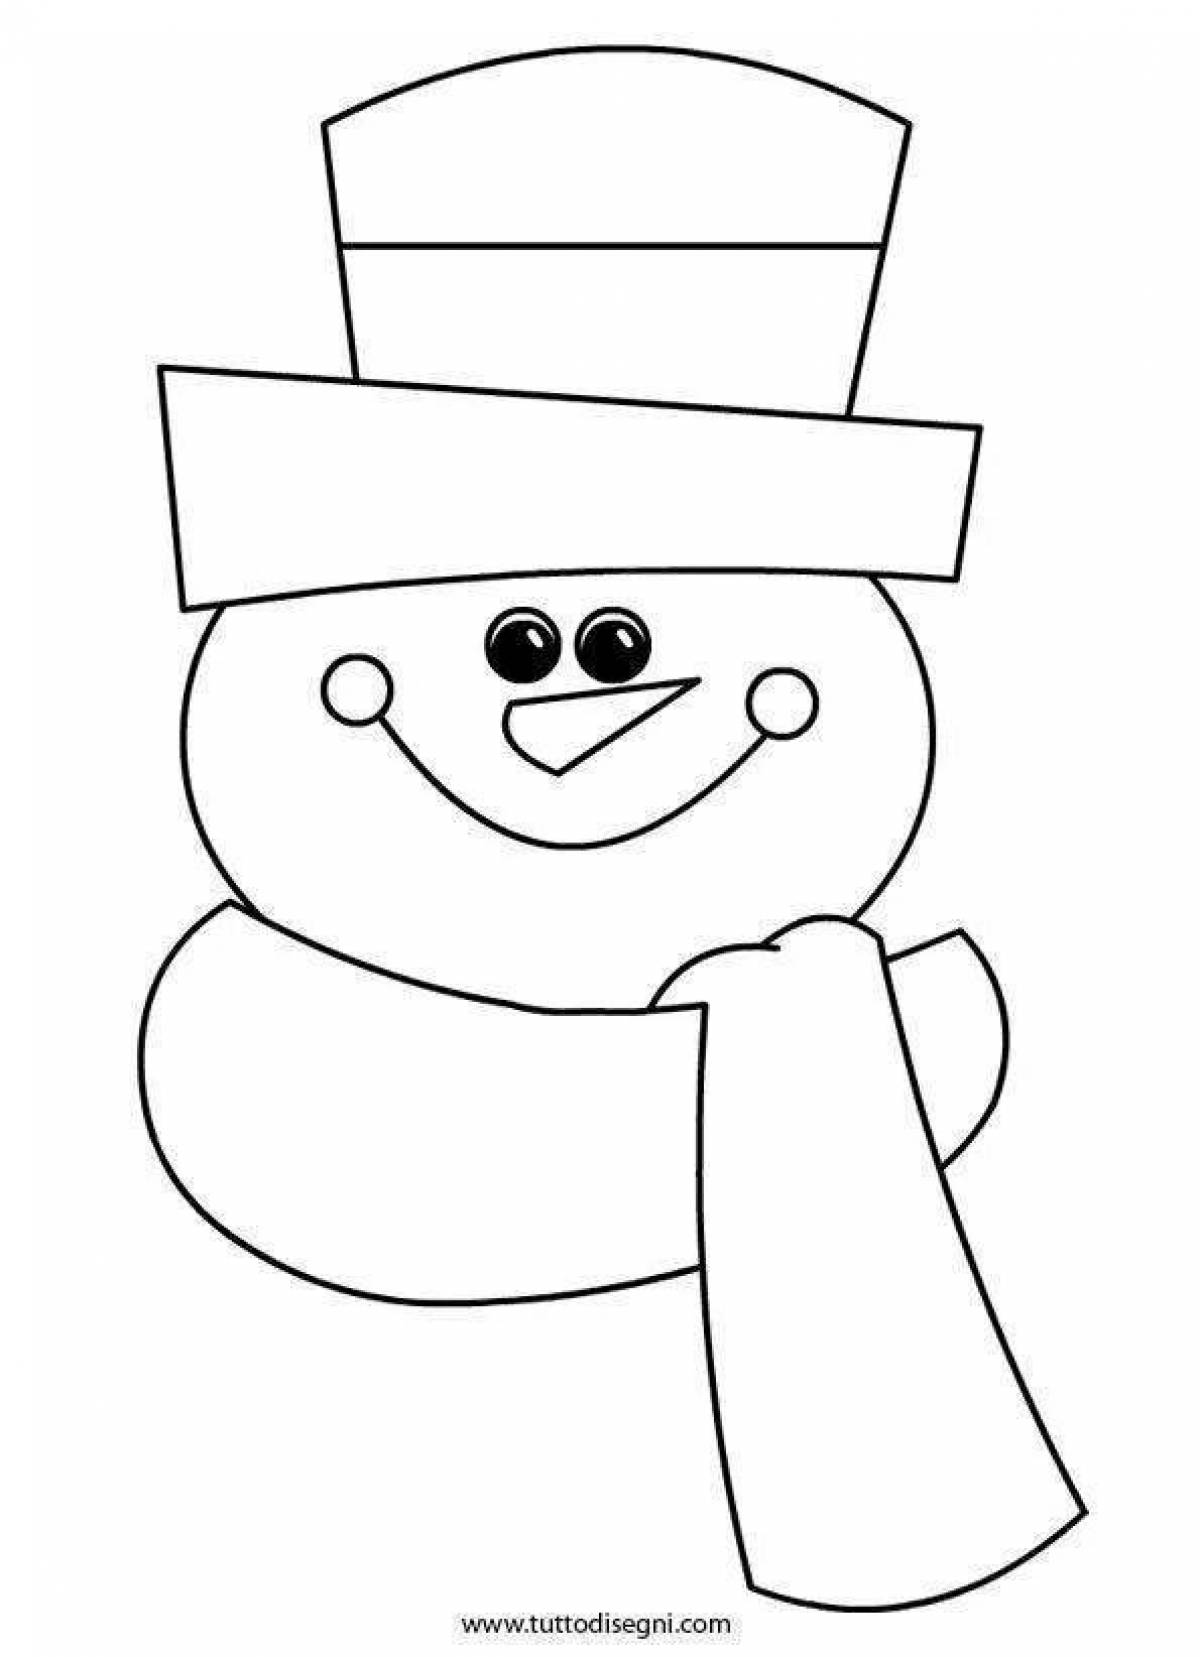 Фото Яркая раскраска голова снеговика